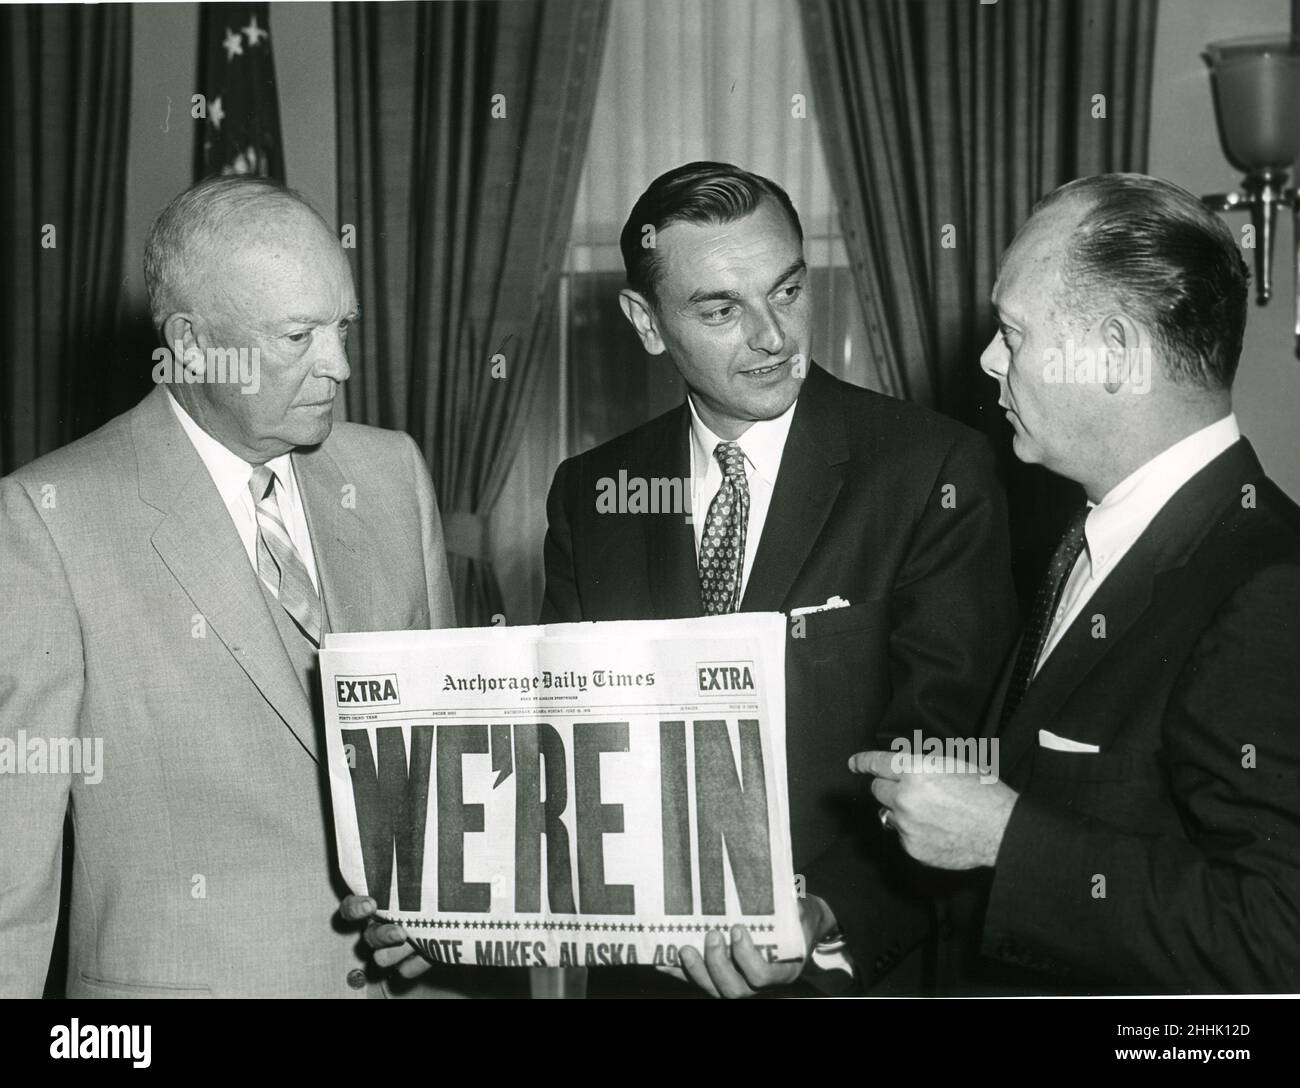 Casa Blanca, 1 de julio de 1958 -- El Presidente Eisenhower posa con el Gobernador Michael Stepovich y el Secretario del Interior, Frederick Andrew Seaton después de que el Congreso votara para aprobar la estadidad de Alaska. Alaska se convirtió en el estado de 49th en 1959. Foto: Abbie Rowe Foto de stock